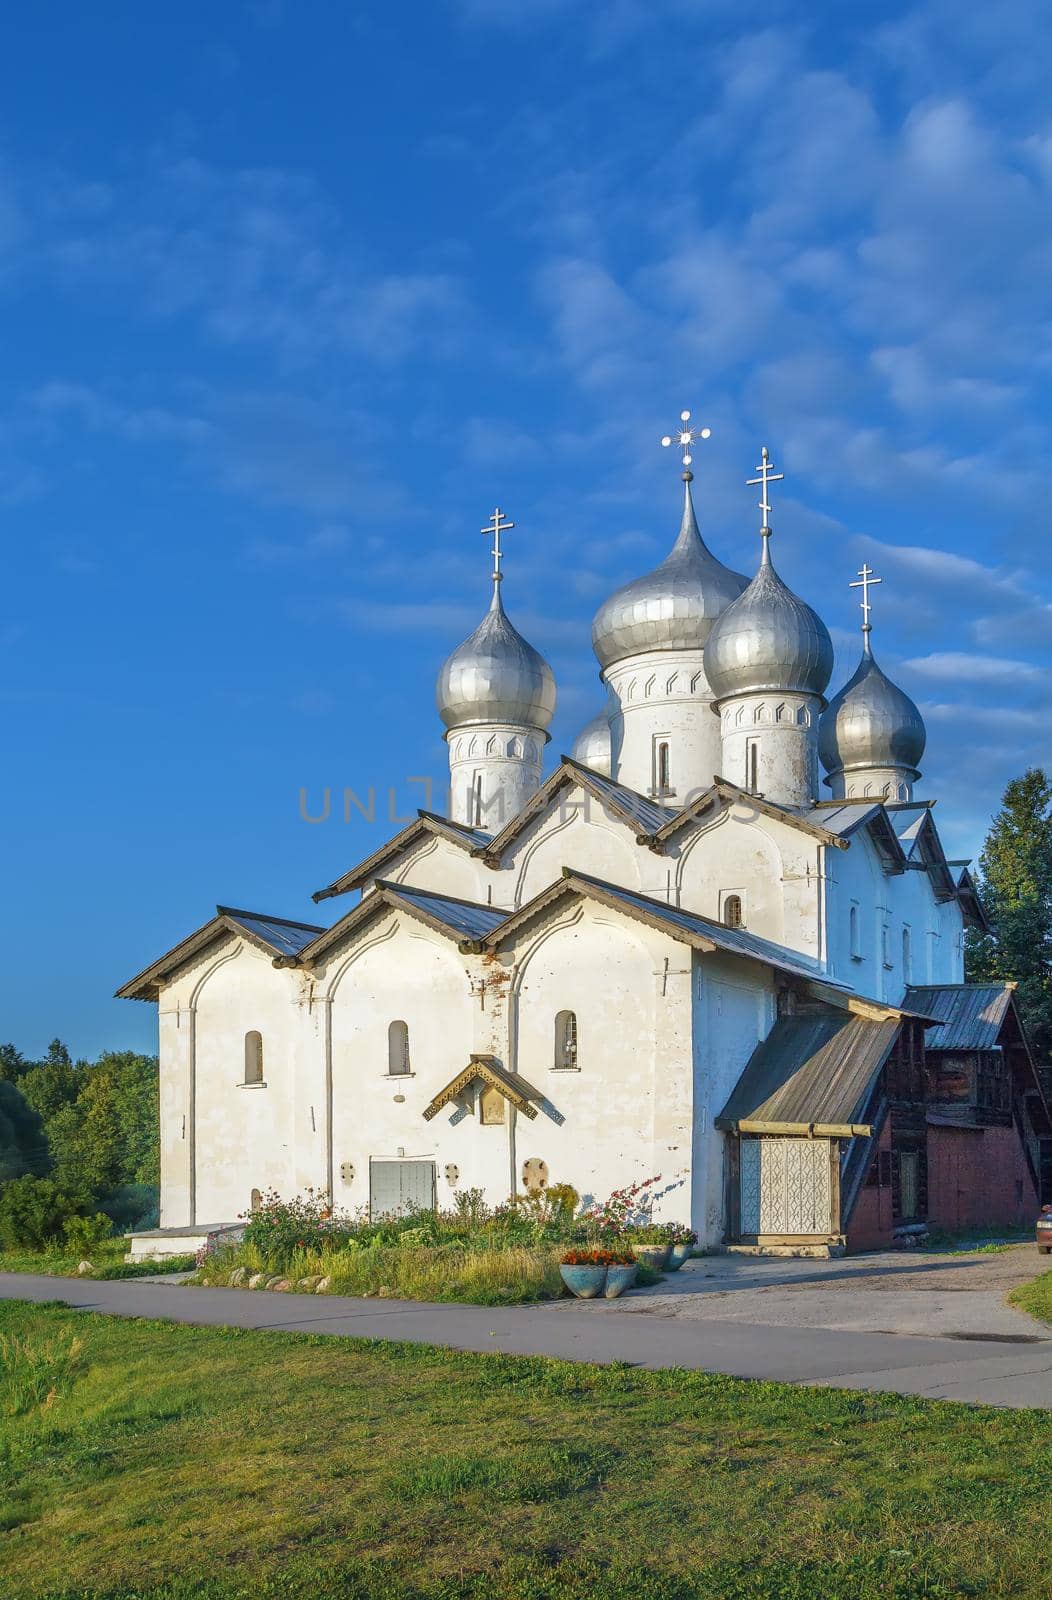 Church of Boris and Gleb in Plotnickom was build in 1536 in Veliky Novgorod, Russia